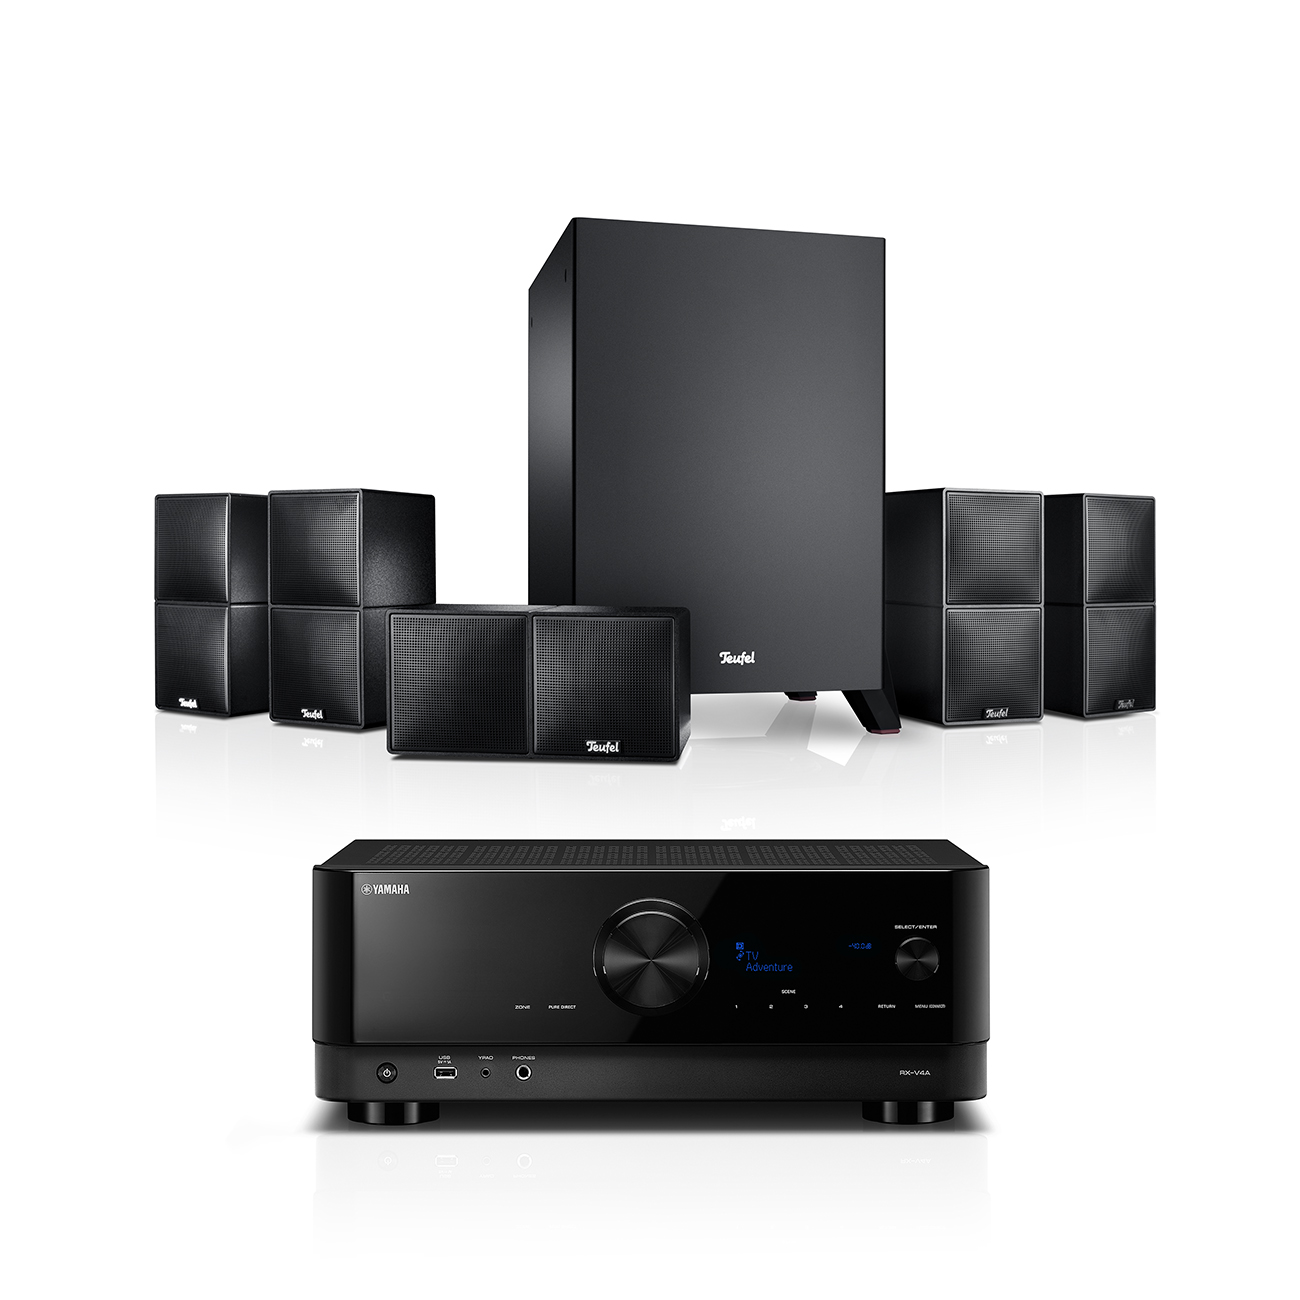 Reproductores de CD - Características - CD Player - Sonido profesional -  Productos - Yamaha - España